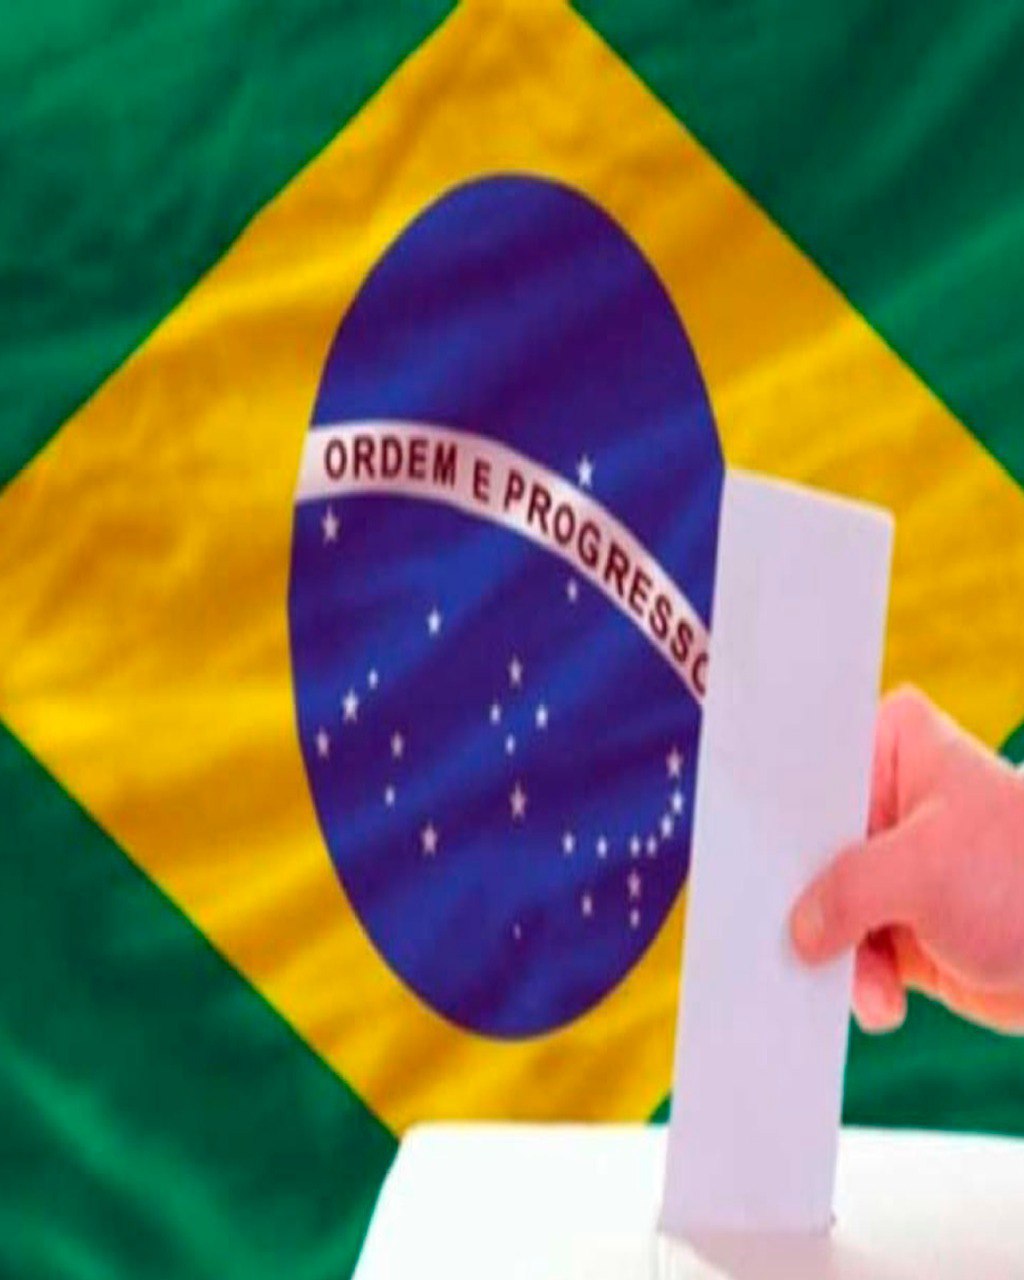 ELECCIONES PRESIDENCIALES BRASIL 2022 por Rafael Bonilla.